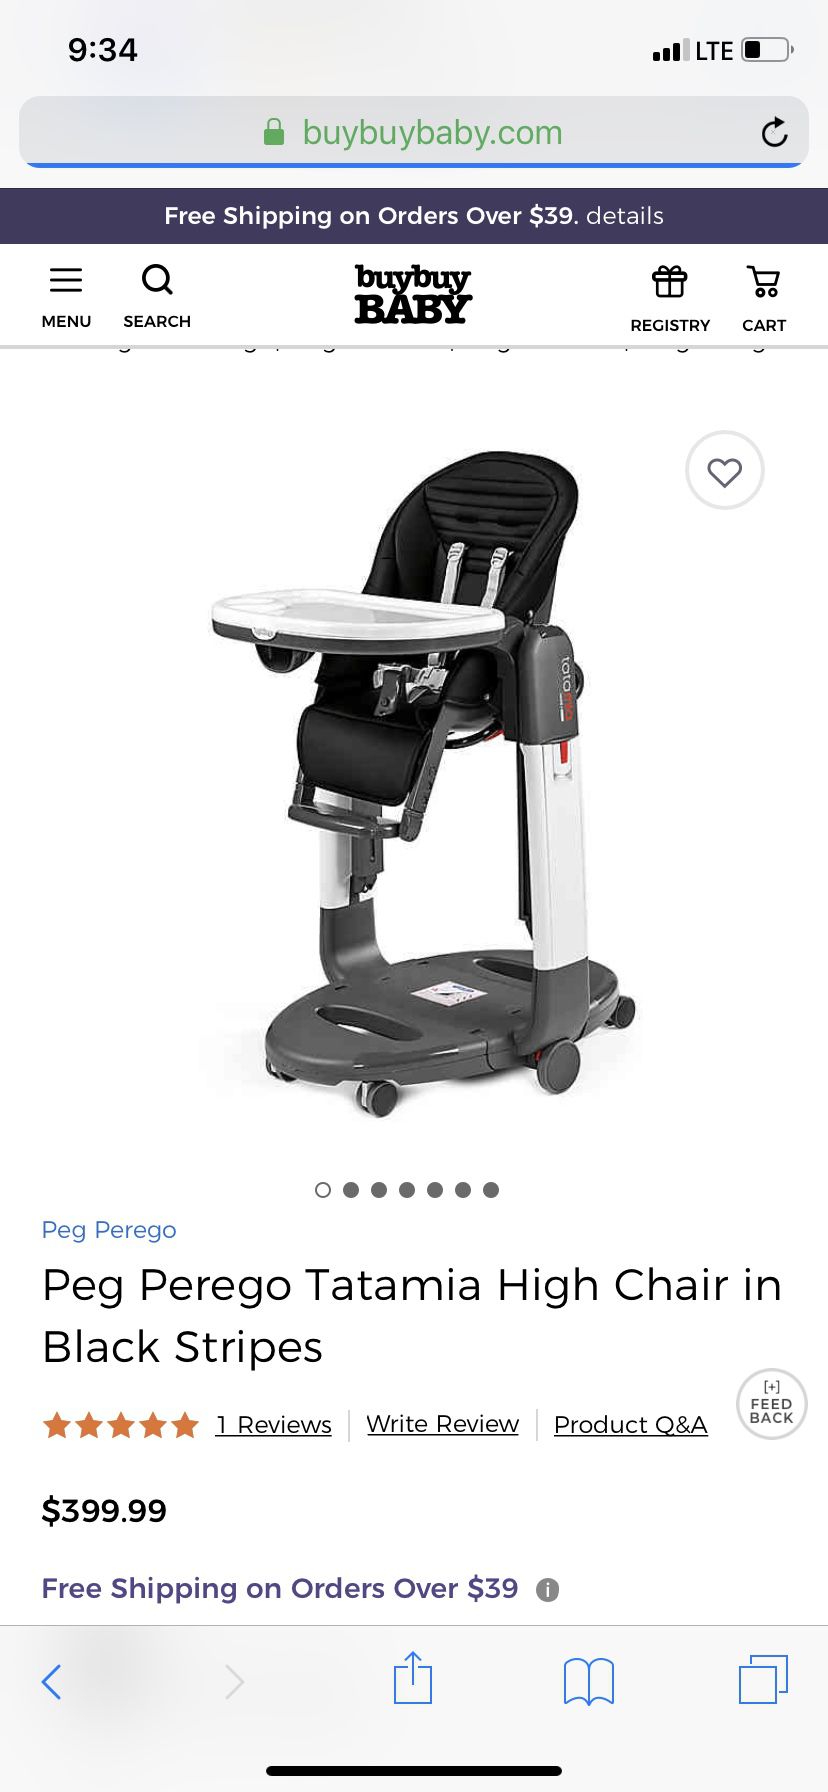 Peg Perego tatamia high chair mocha leather used